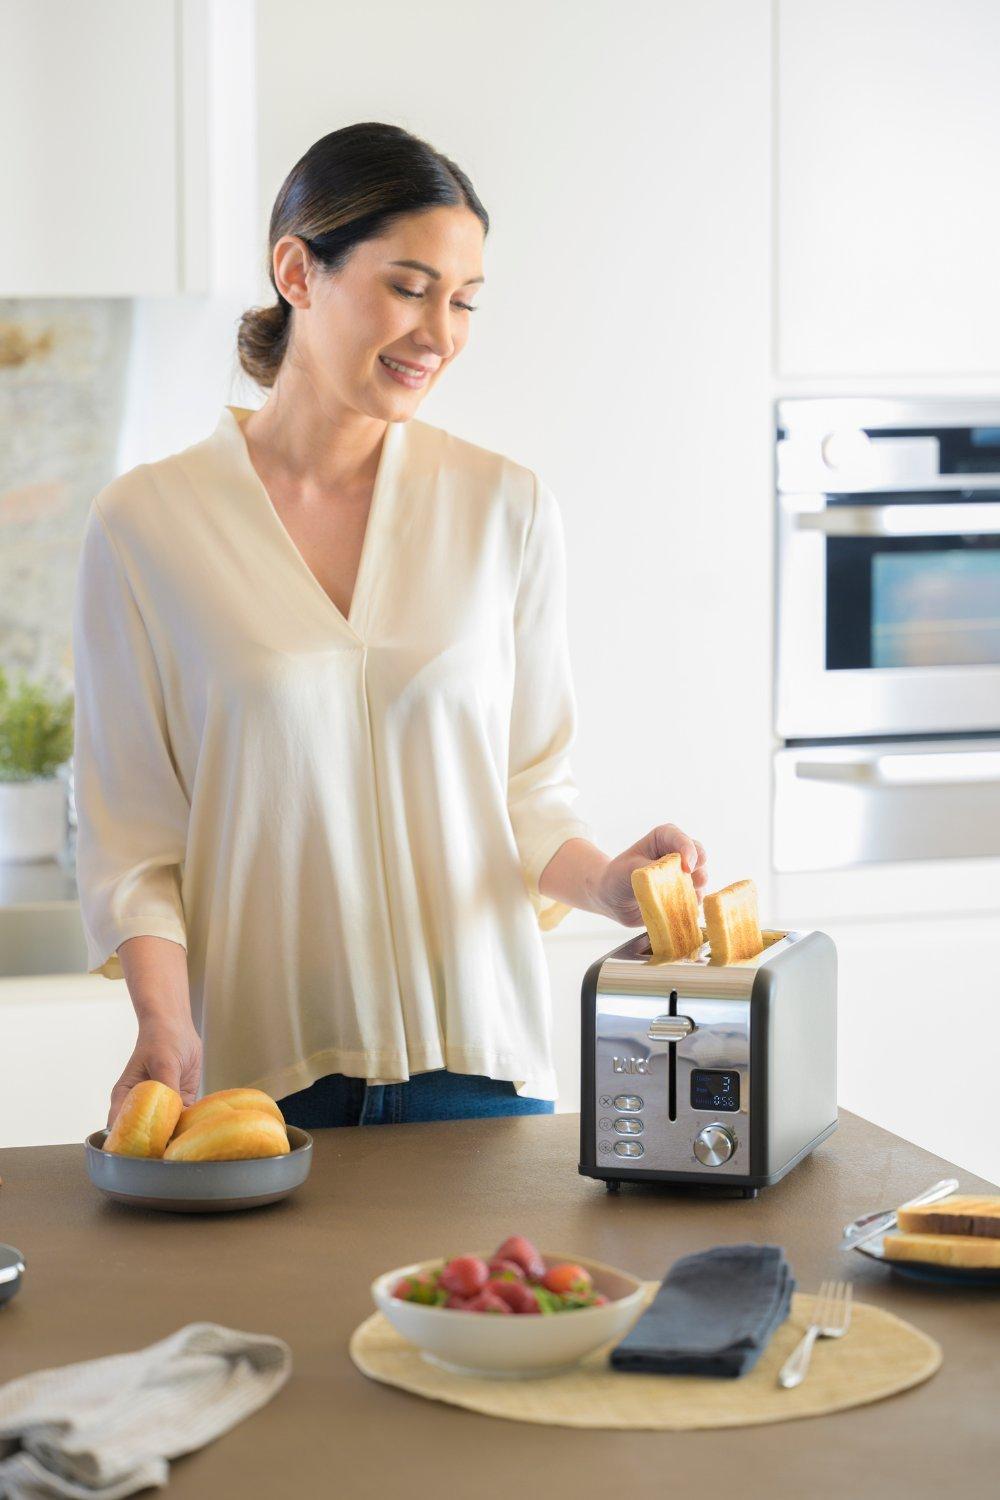 ISEO 4 slice digital toaster – LAICA